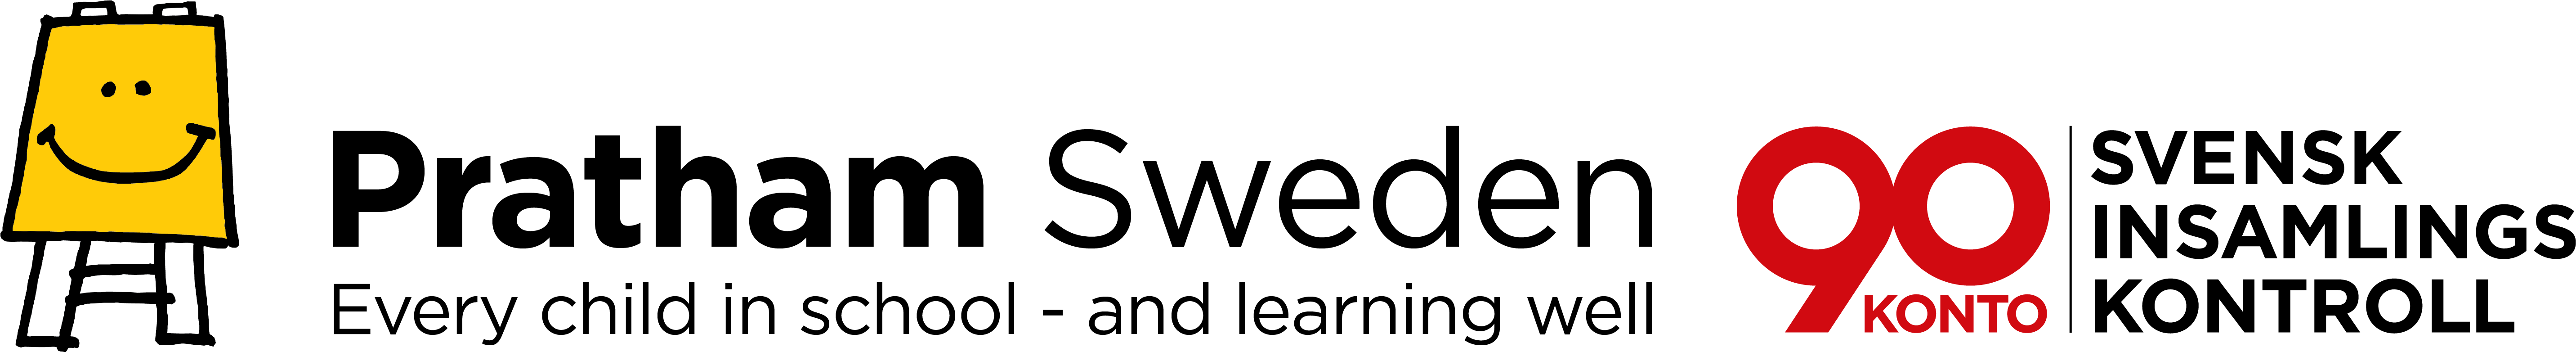 Pratham Sweden logo